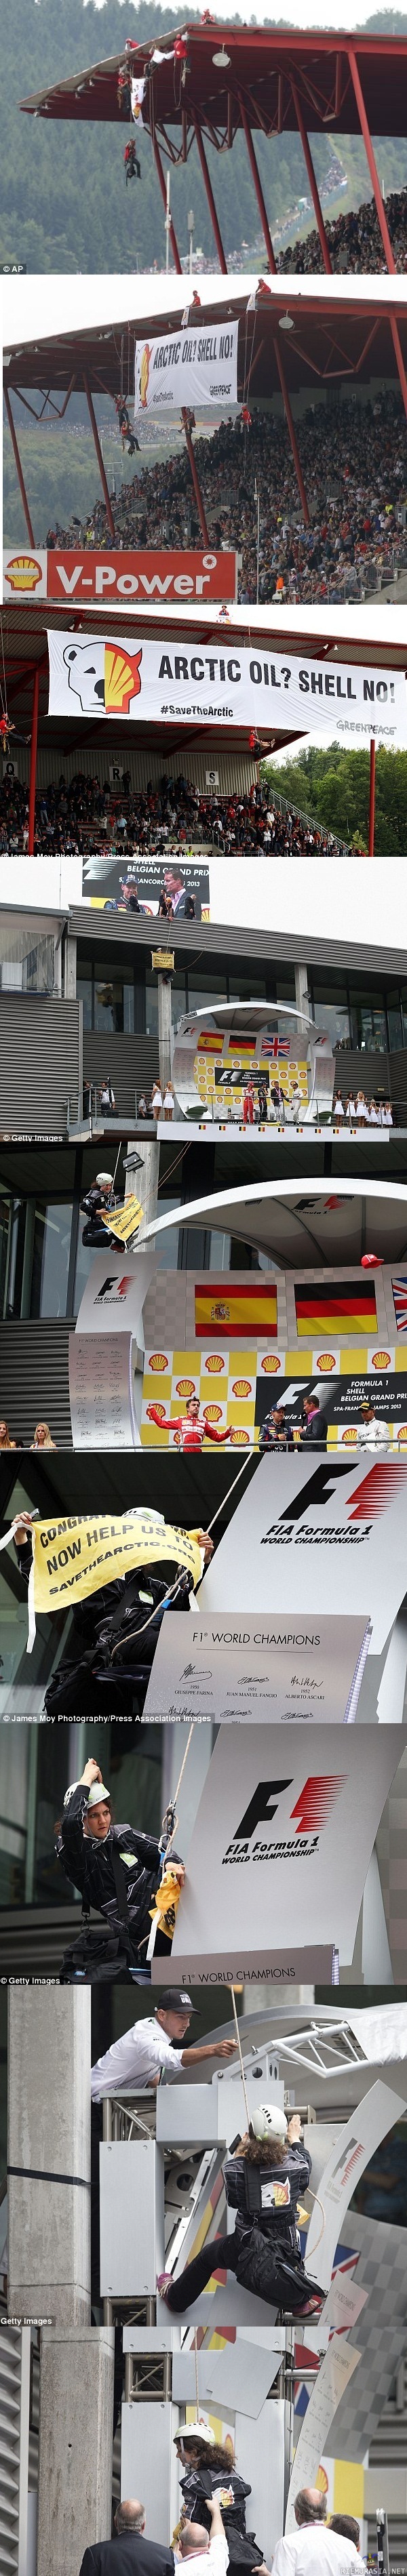 Greenpeace aktivistit Belgian F1 grand prix:ssä - hipille tuli yllättäen kiire alas :D